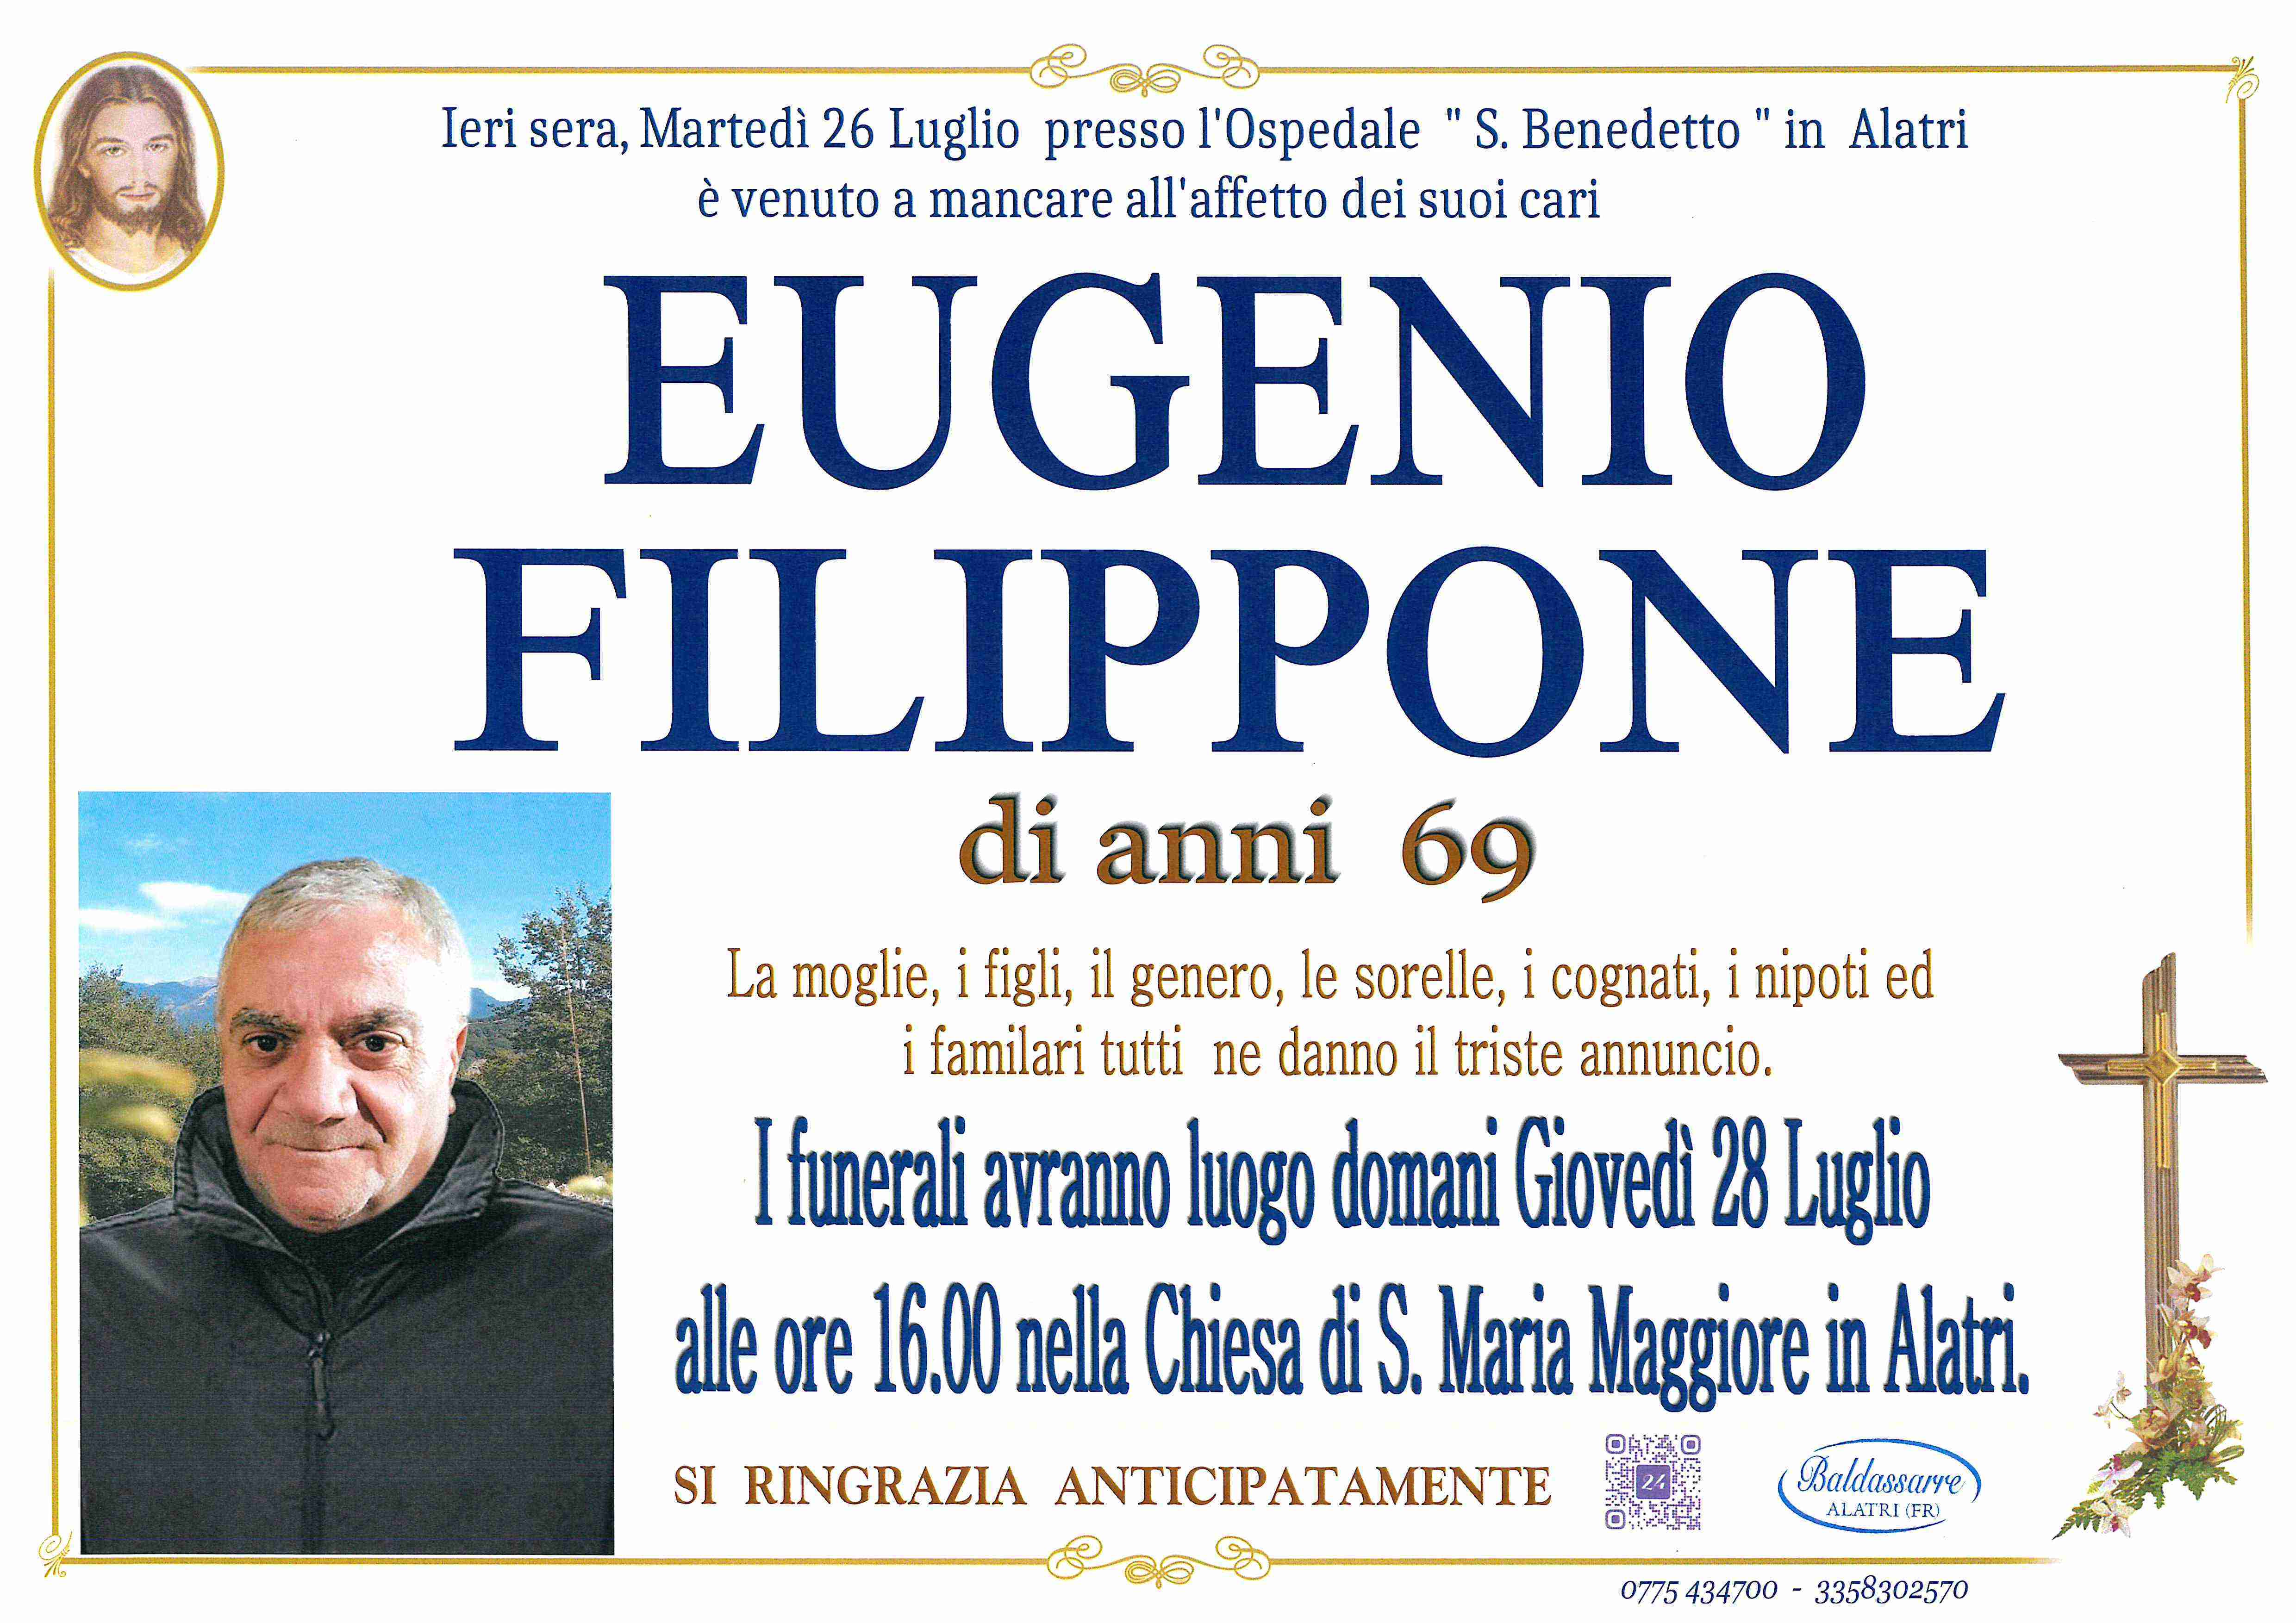 Eugenio Filippone